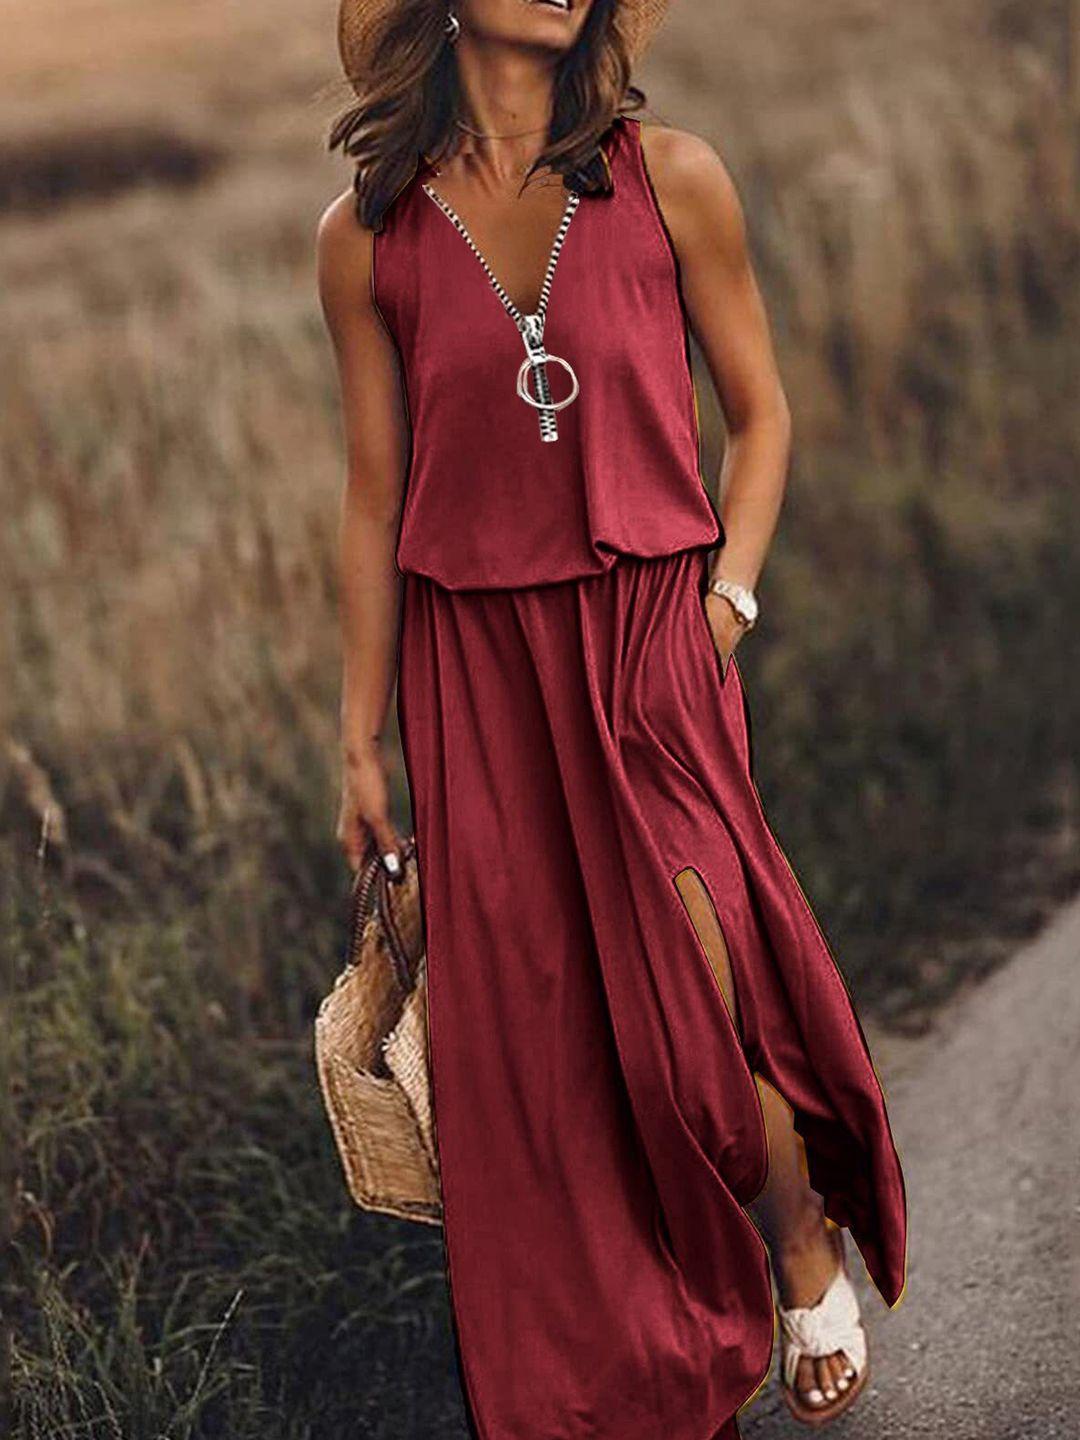 stylecast maroon sleeveless maxi dress